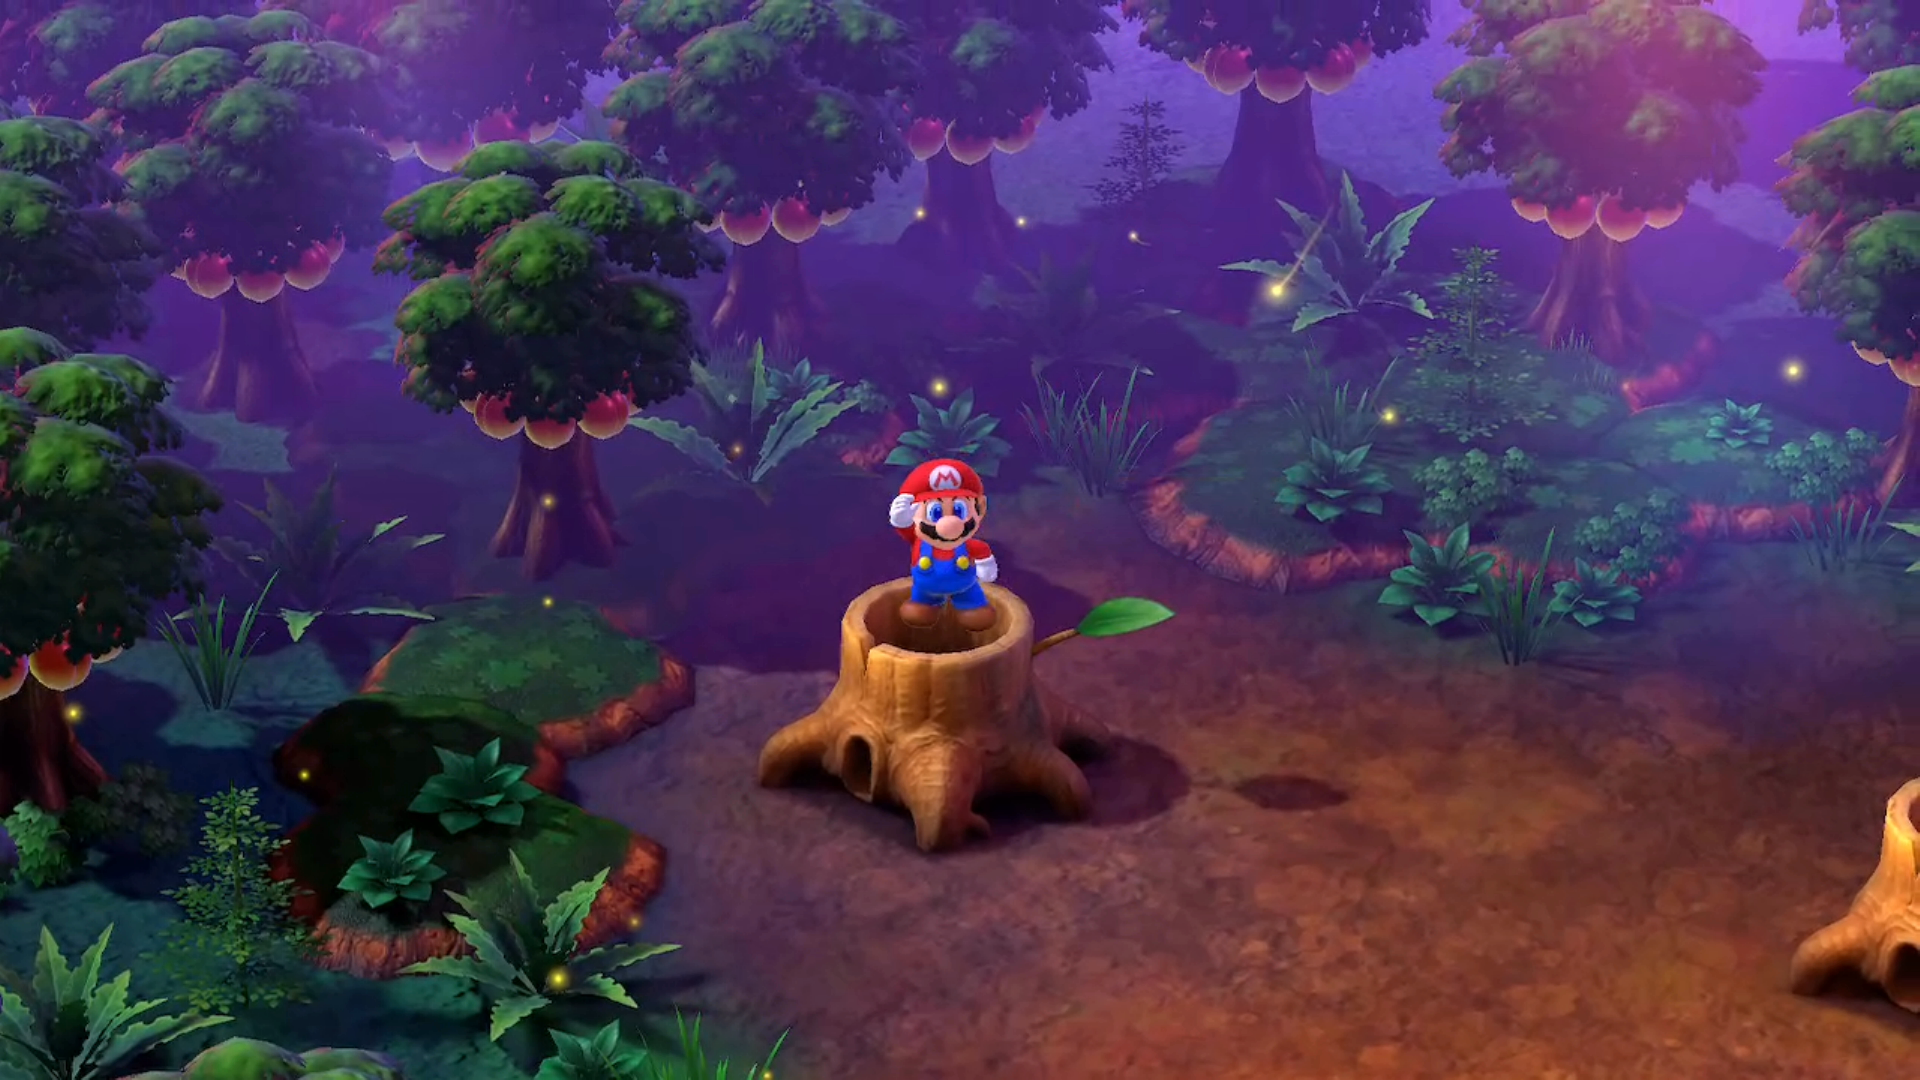 Super Mario RPG Forest Maze